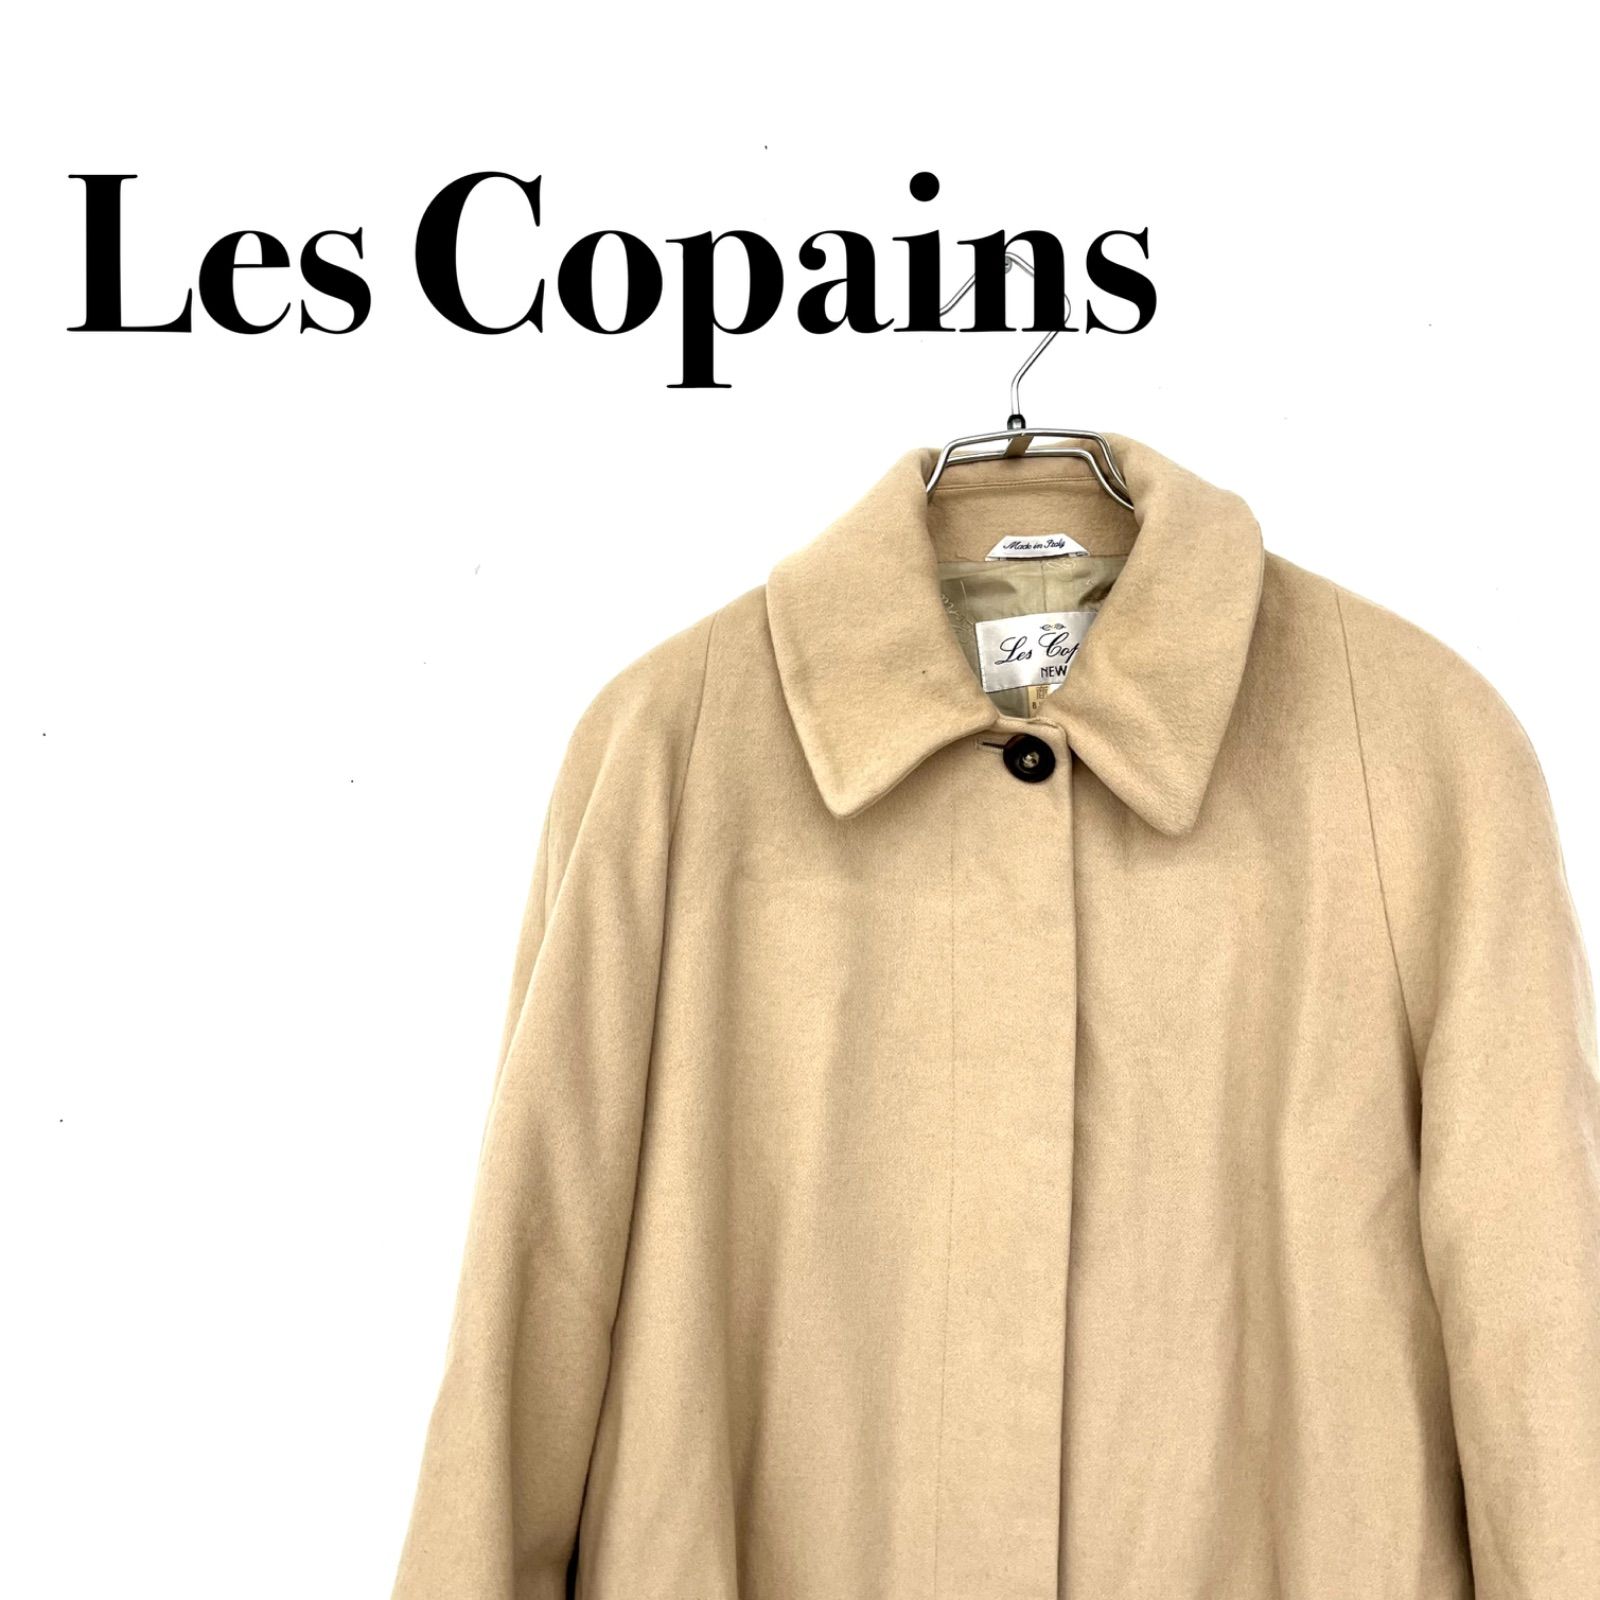 Les Copains レコパン カシミヤ100% コート ロングコート 40サイズ L